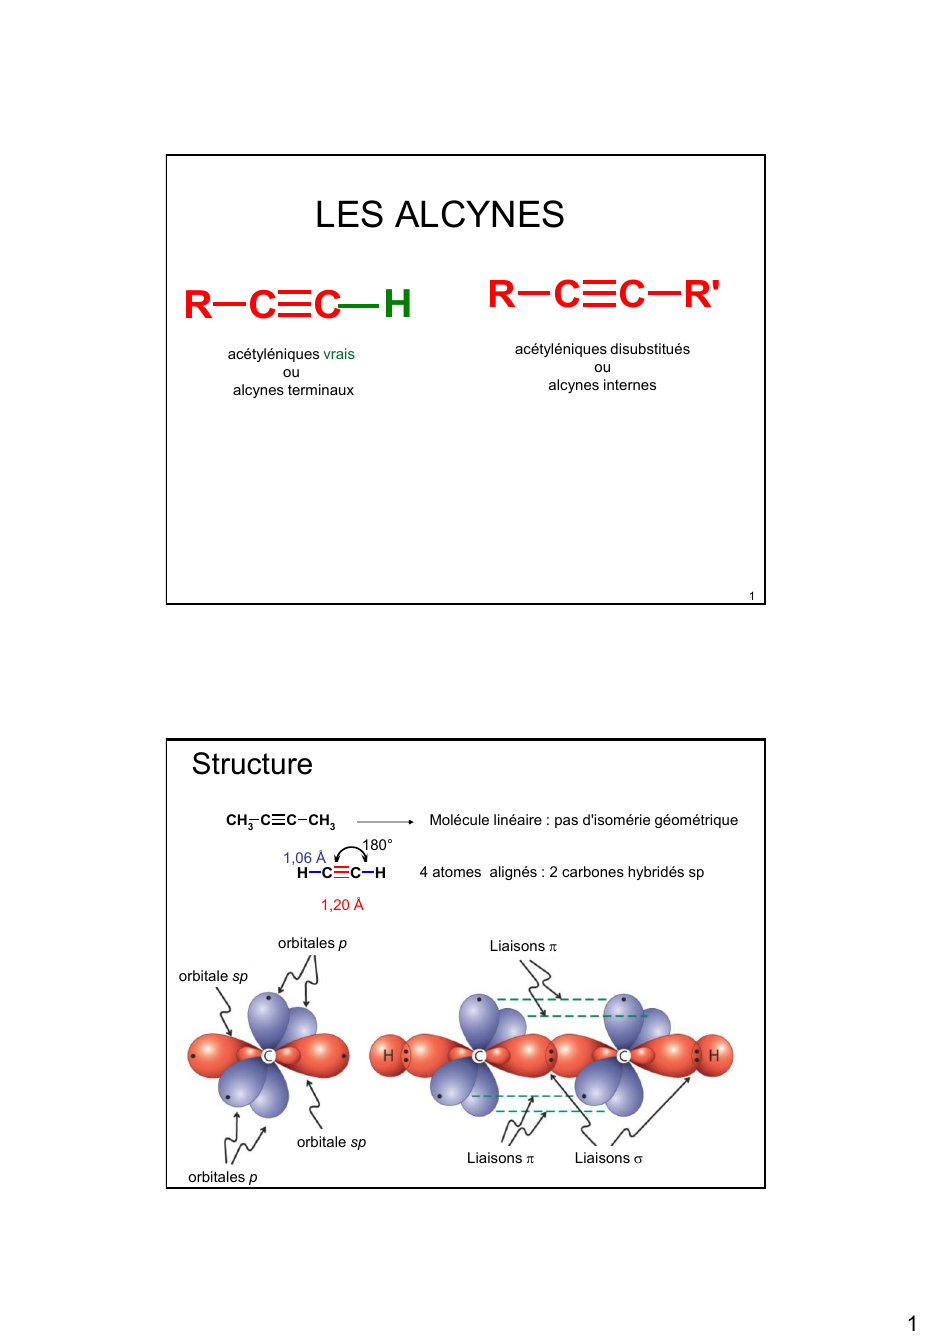 Prévisualisation du document LES ALCYNES

H

R C C

R C C R'
acétyléniques disubstitués
ou
alcynes internes

acétyléniques vrais
ou
alcynes terminaux...